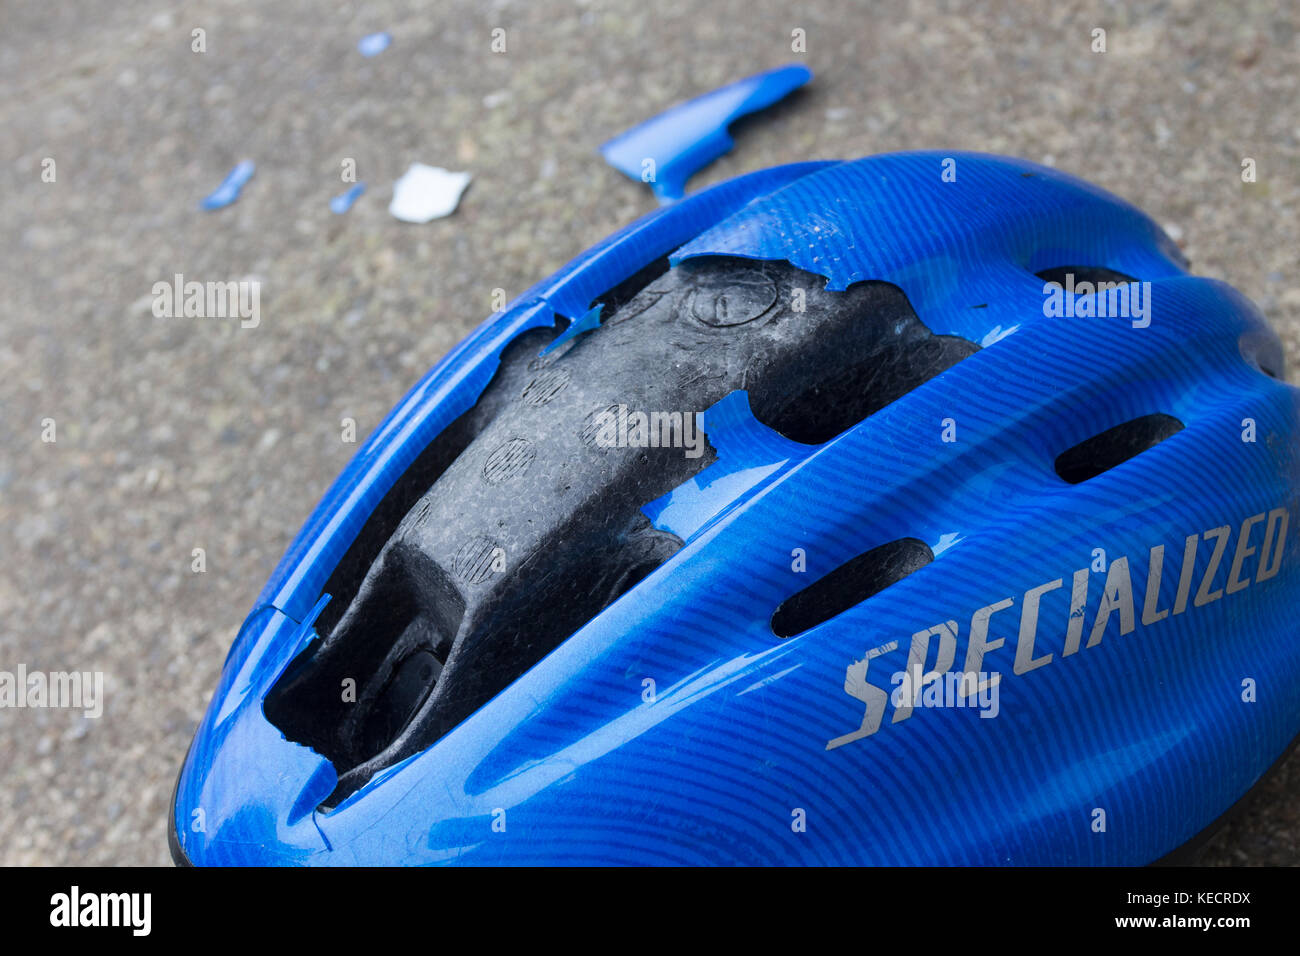 Impacto ha dañado el casco de ciclismo Foto de stock